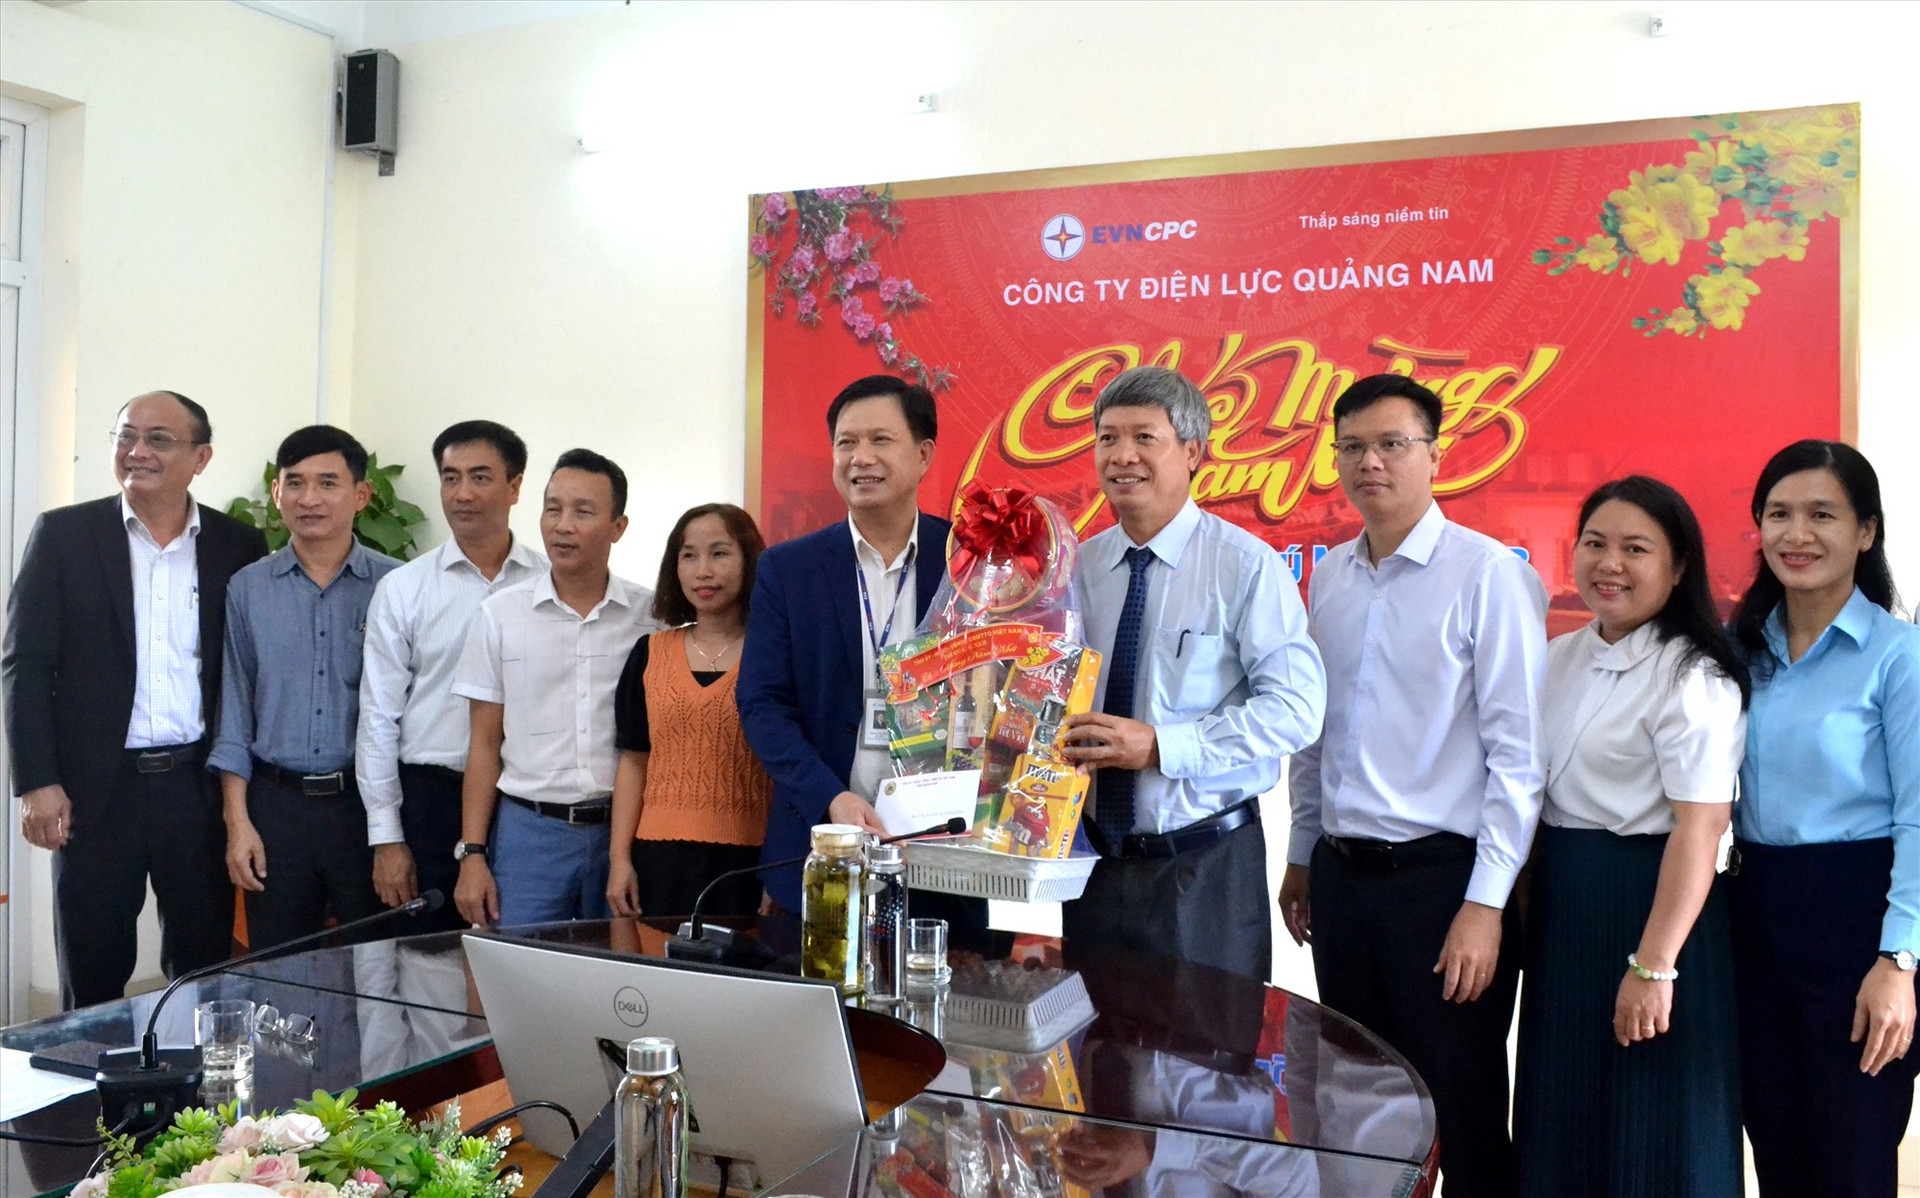 Phó Chủ tịch UBND tỉnh Hồ Quang Bửu cùng đoàn công tác của UBND tỉnh chúc tết Công ty Điện lực Quảng Nam. Ảnh: Q.VIỆt